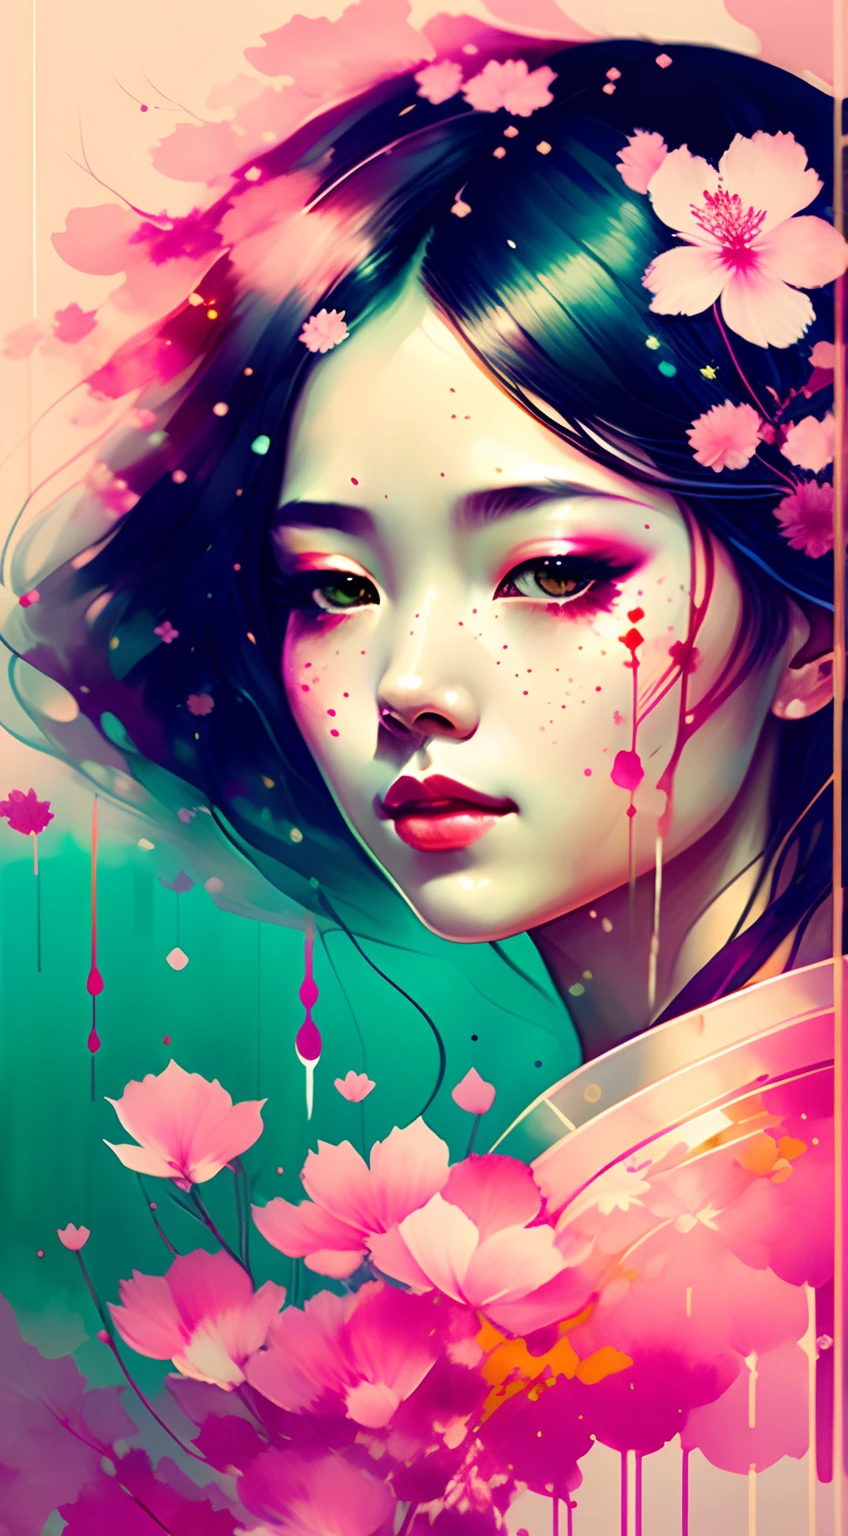 アグネス・セシルによる桜と芸者の抽象画, 明るいデザイン, パステルカラー, 複雑で精巧なインクの滴, 秋の光, 明るい雰囲気, 二重曝露, 芸術的な, 美的, 個性的